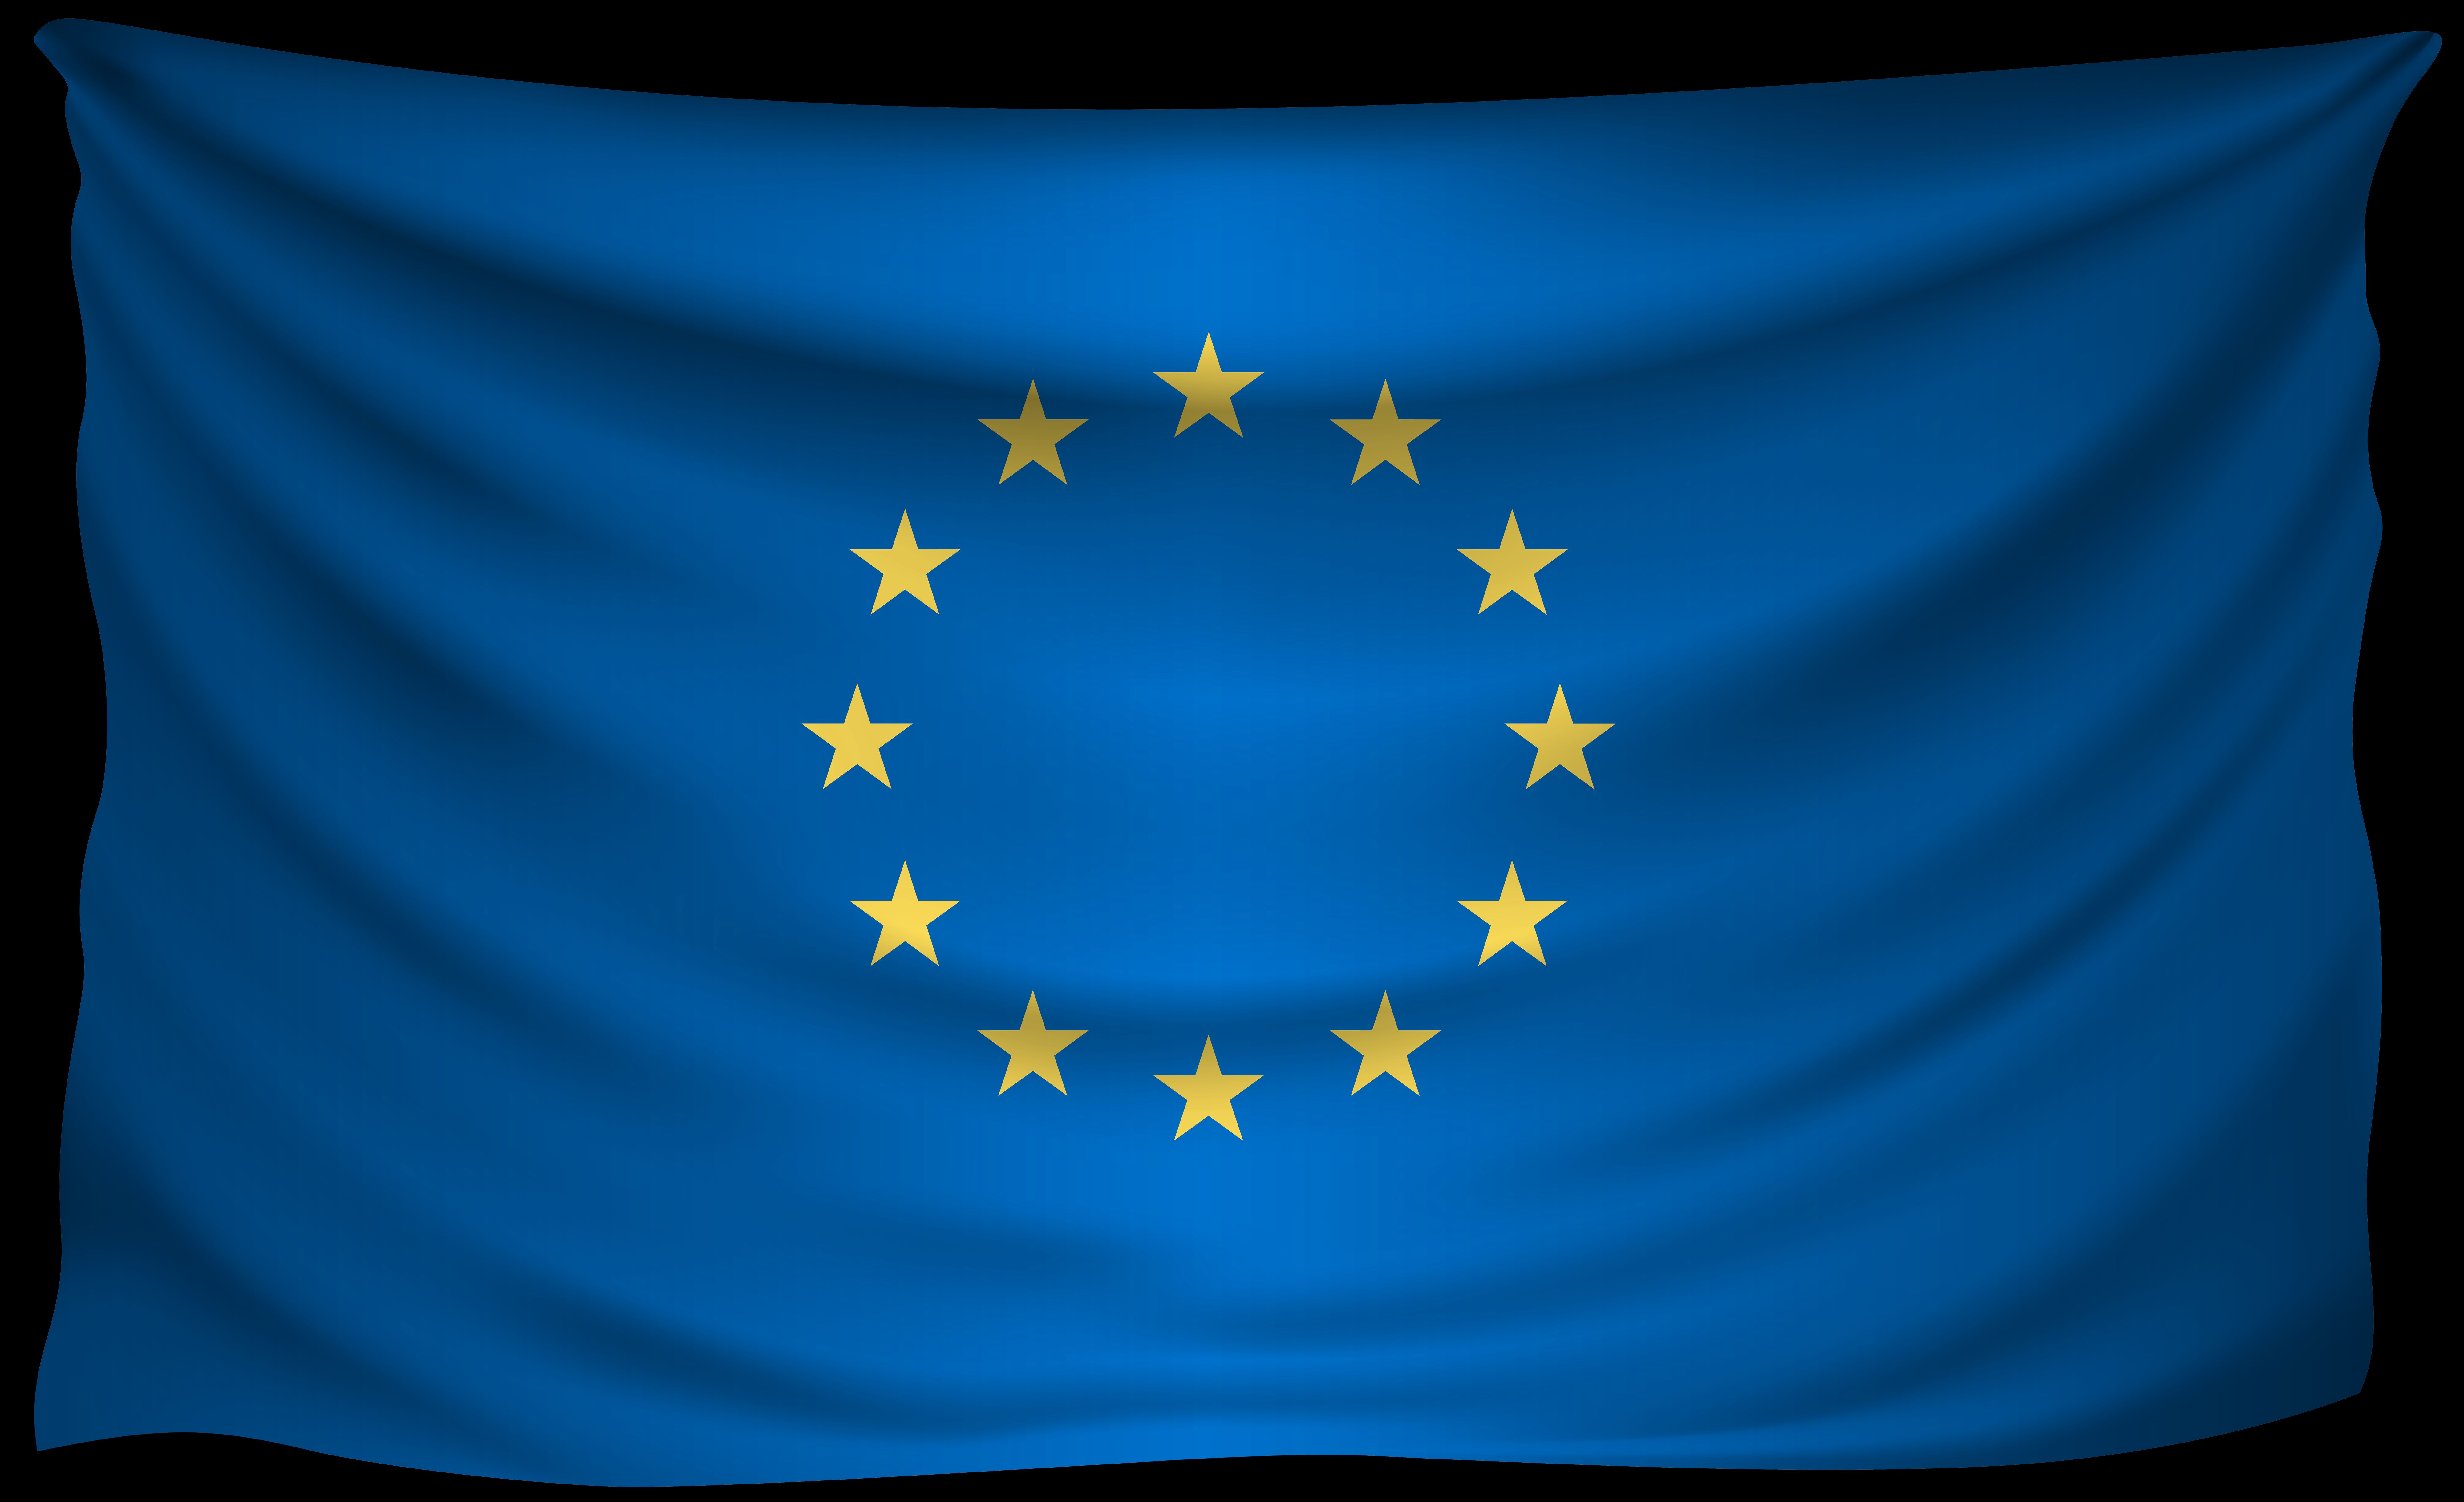 Популярные заставки и фоны Европейский Союз на компьютер